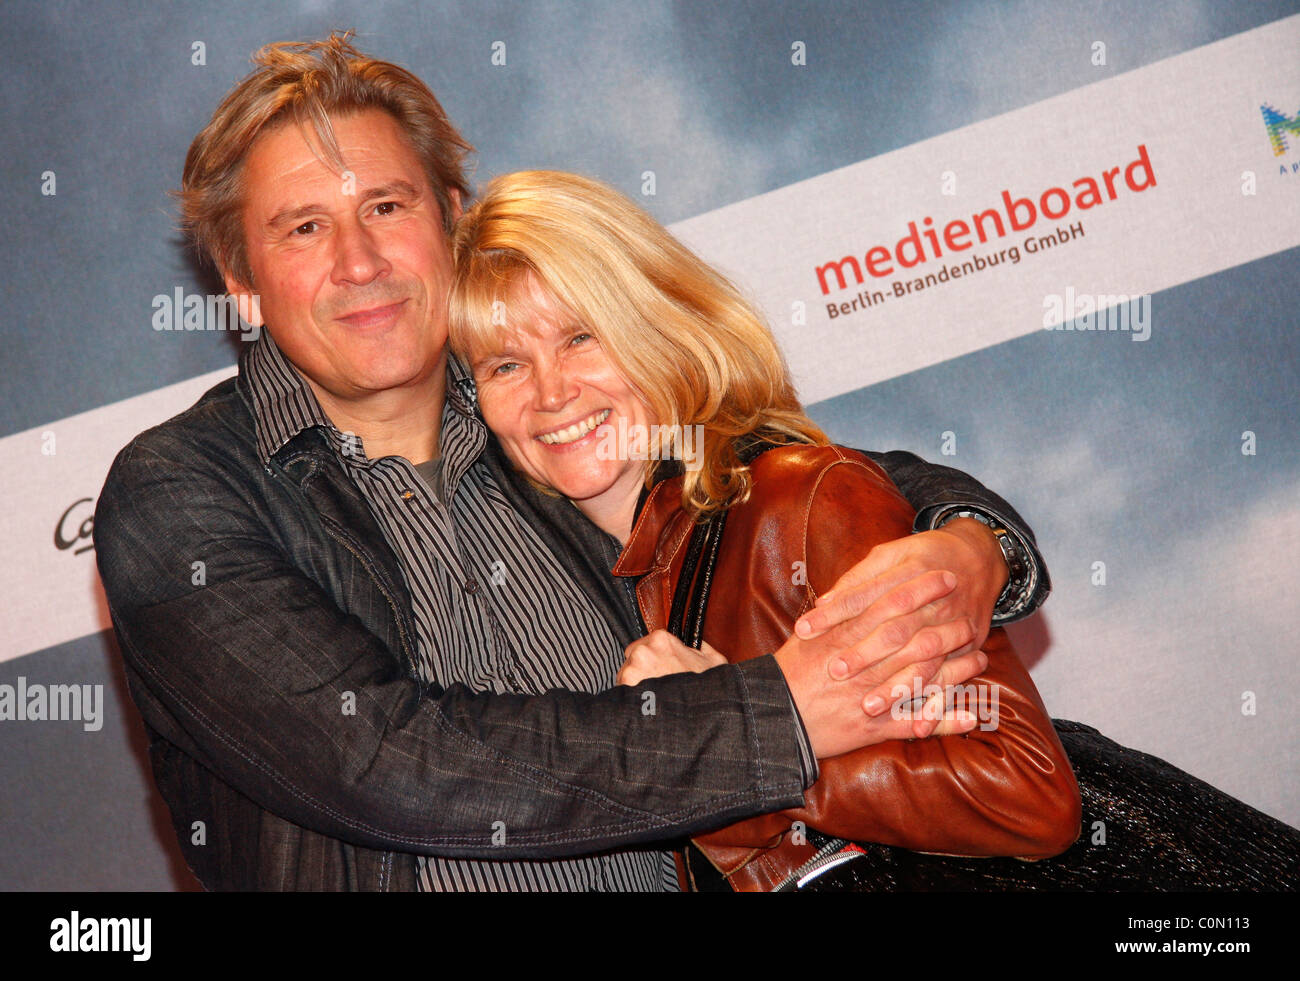 Michael Kind and his wife Ursula Premiere for the TV movie "Wir sind das Volk - Liebe kennt keine Grenzen" at Kosmos movie Stock Photo